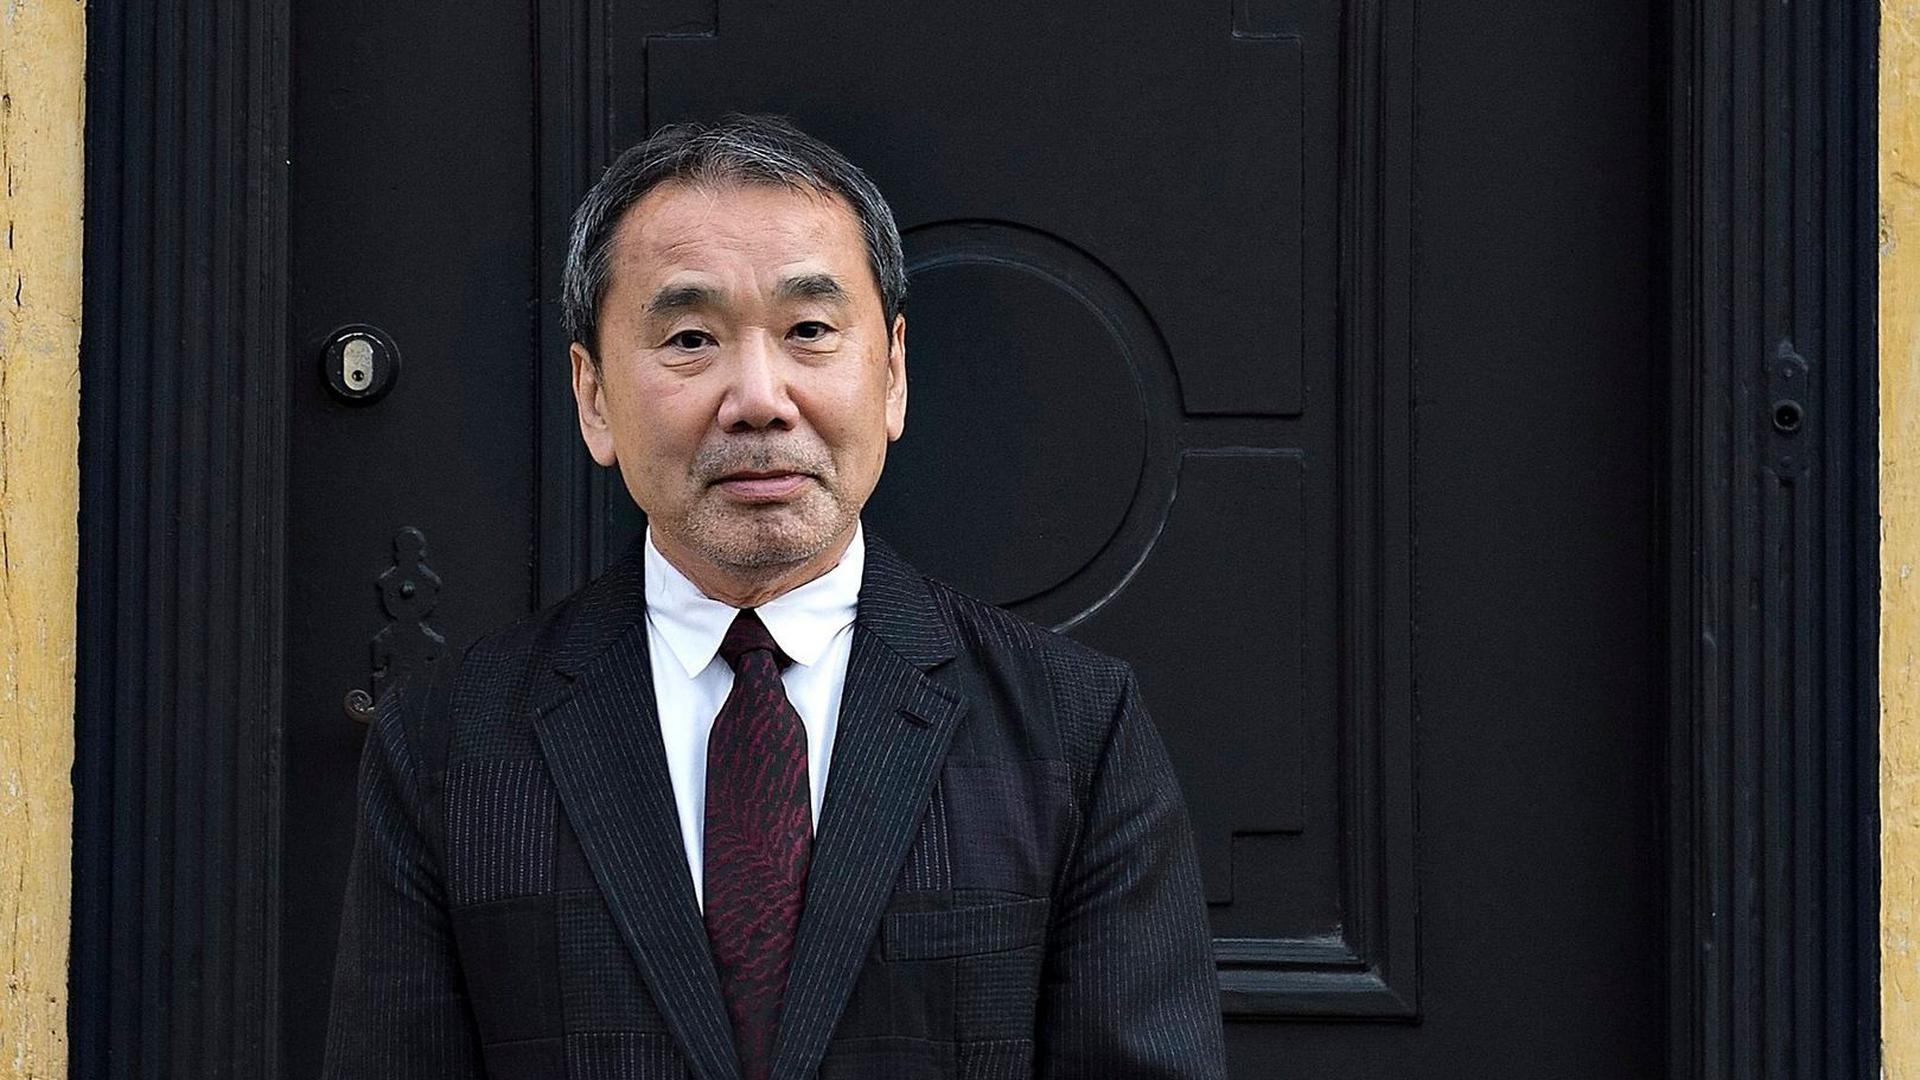 Haruki Murakami öffnet seinen Kleiderschrank – unf verrät dabei einiges über sein Leben.